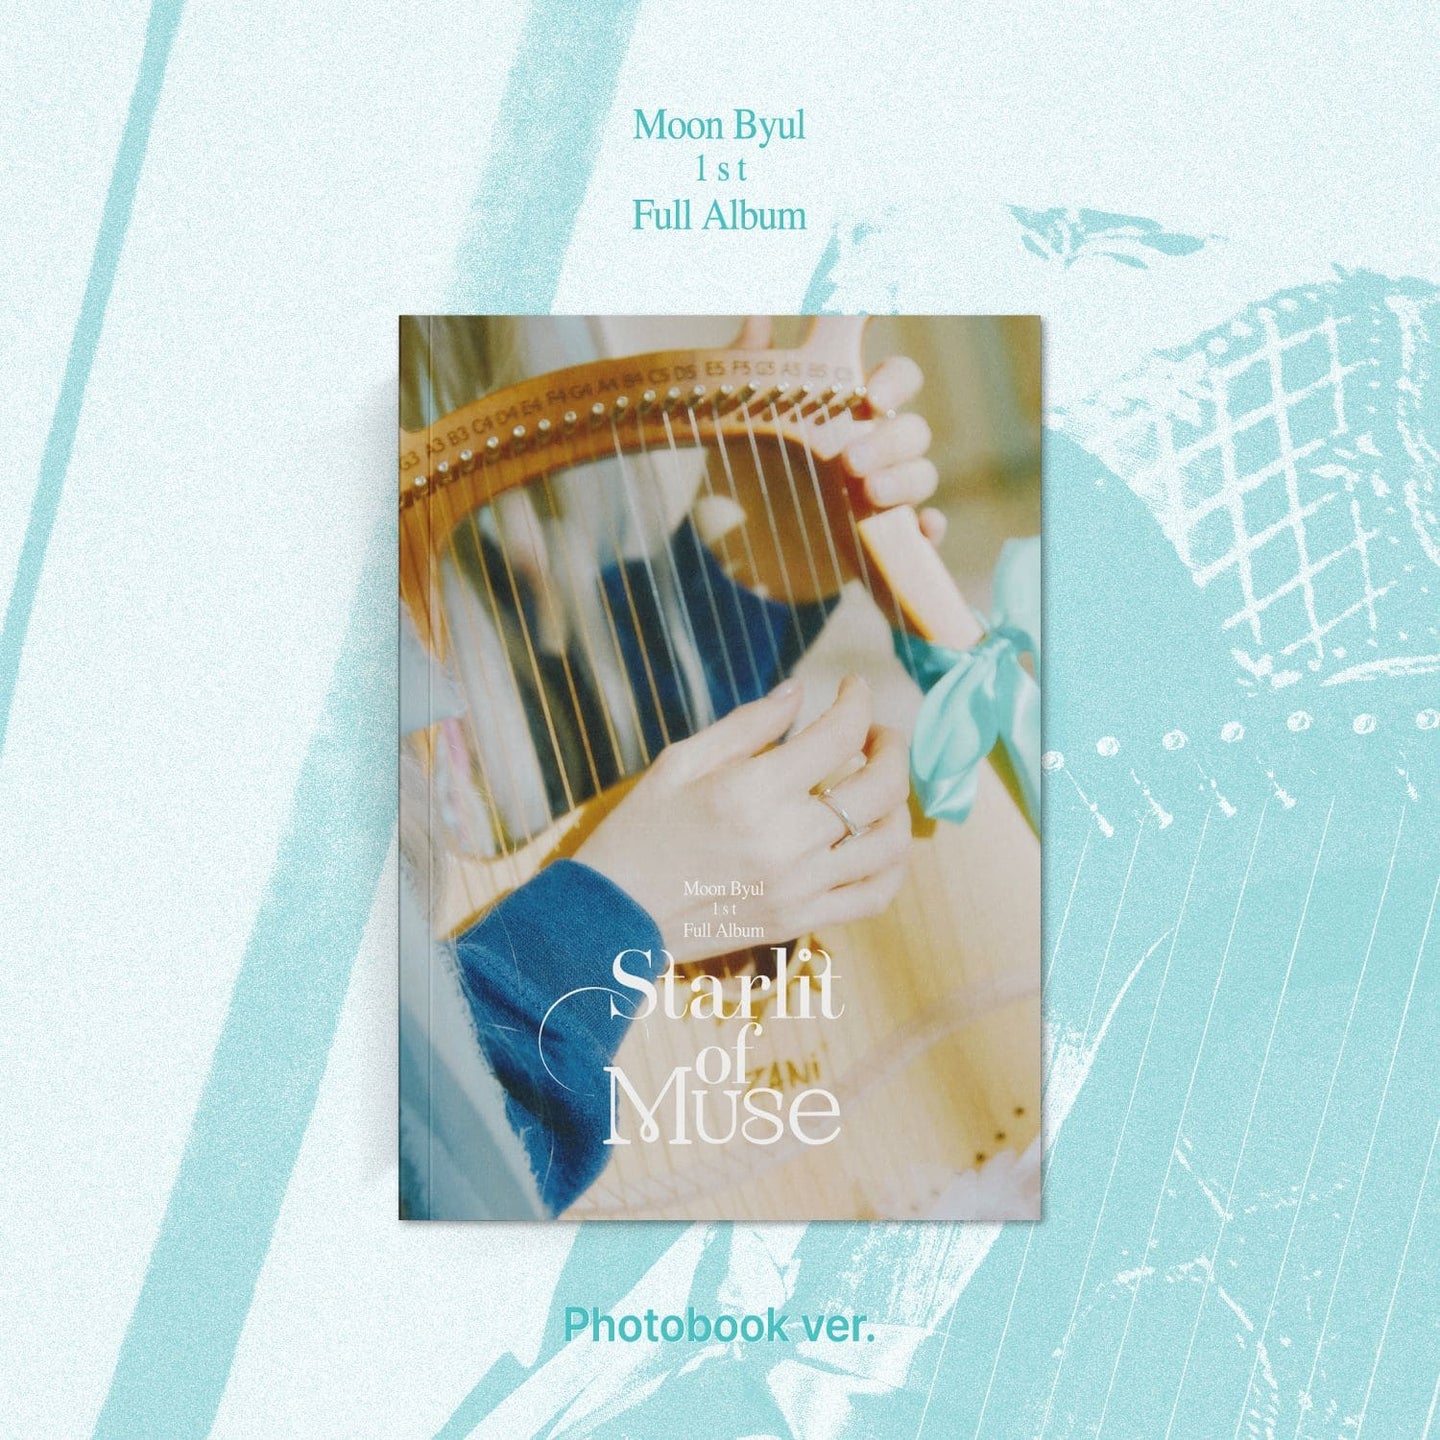 Moon Byul 1st Full Album – Starlit of Muse (Photobook Ver.)